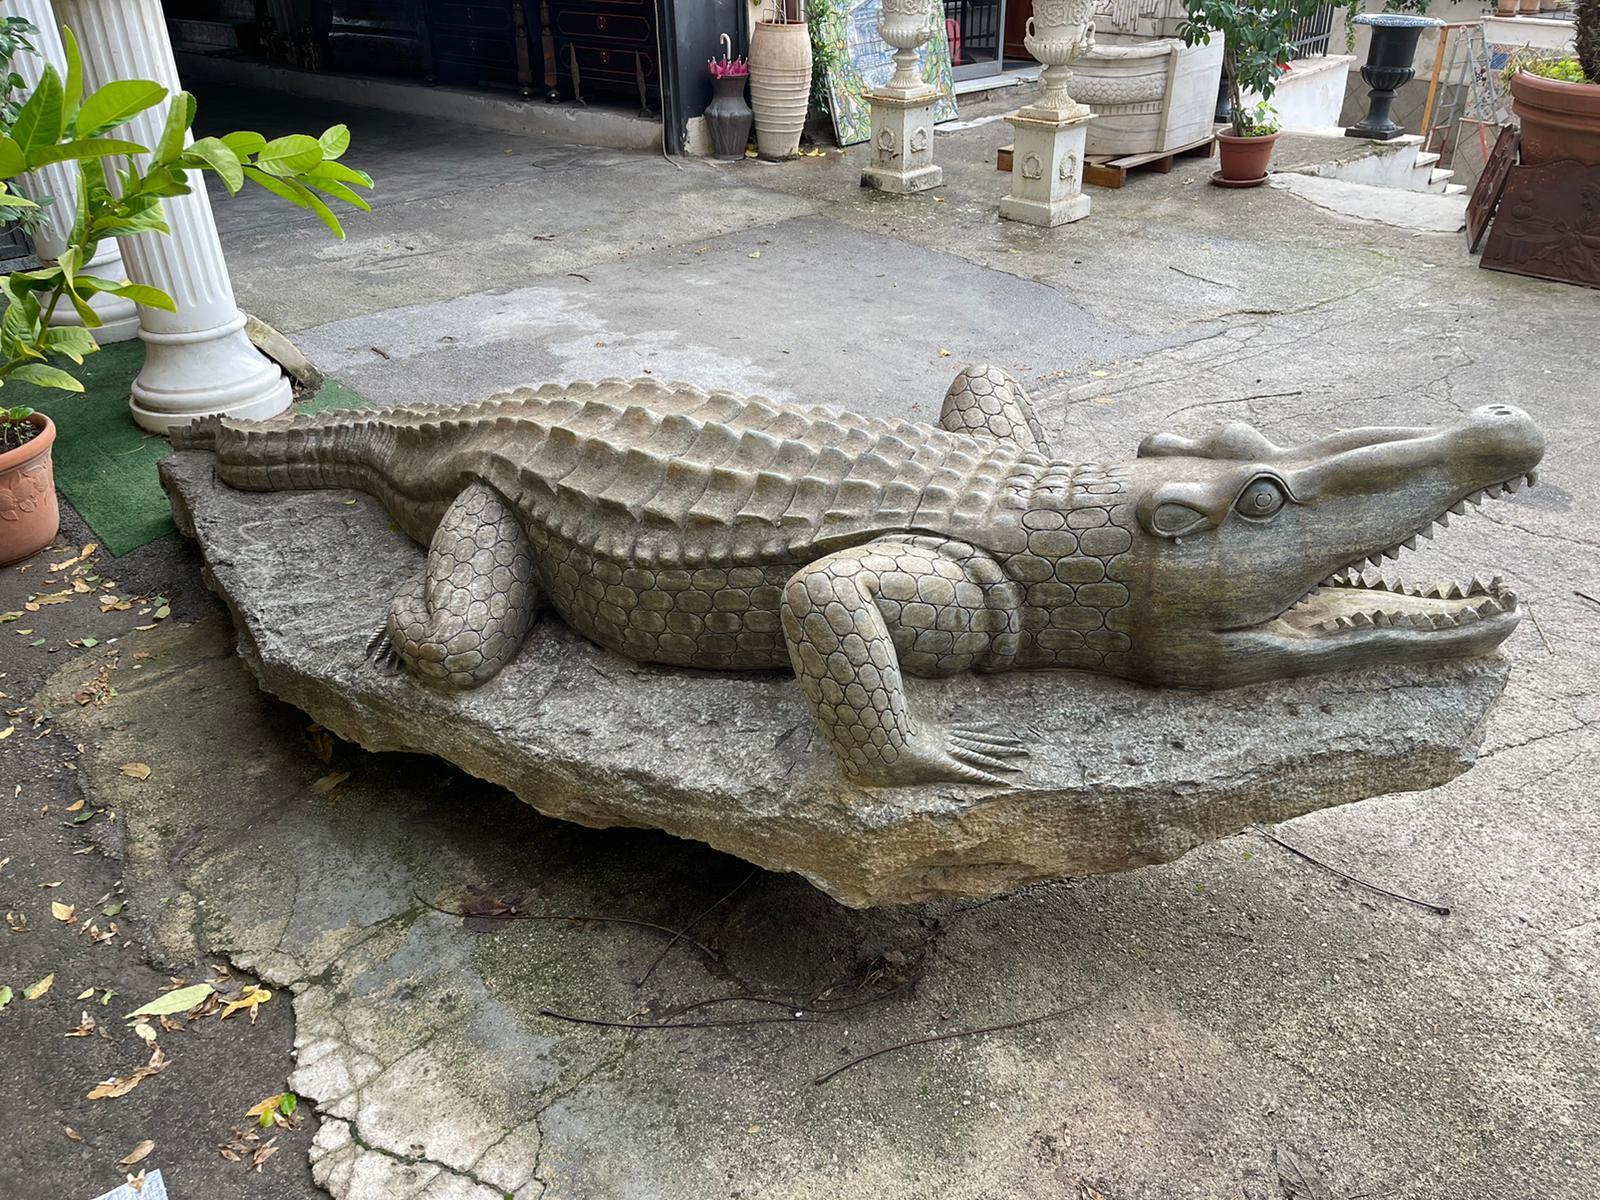 Große Skulptur aus grünem Marmor, die ein Krokodil darstellt.

Es befand sich in einer Villa in der Toskana, Italien, ist es ohne Mängel außer für die Zeichen der Zeit präsentiert.

Die bis ins kleinste Detail von Hand gefertigte Skulptur hat